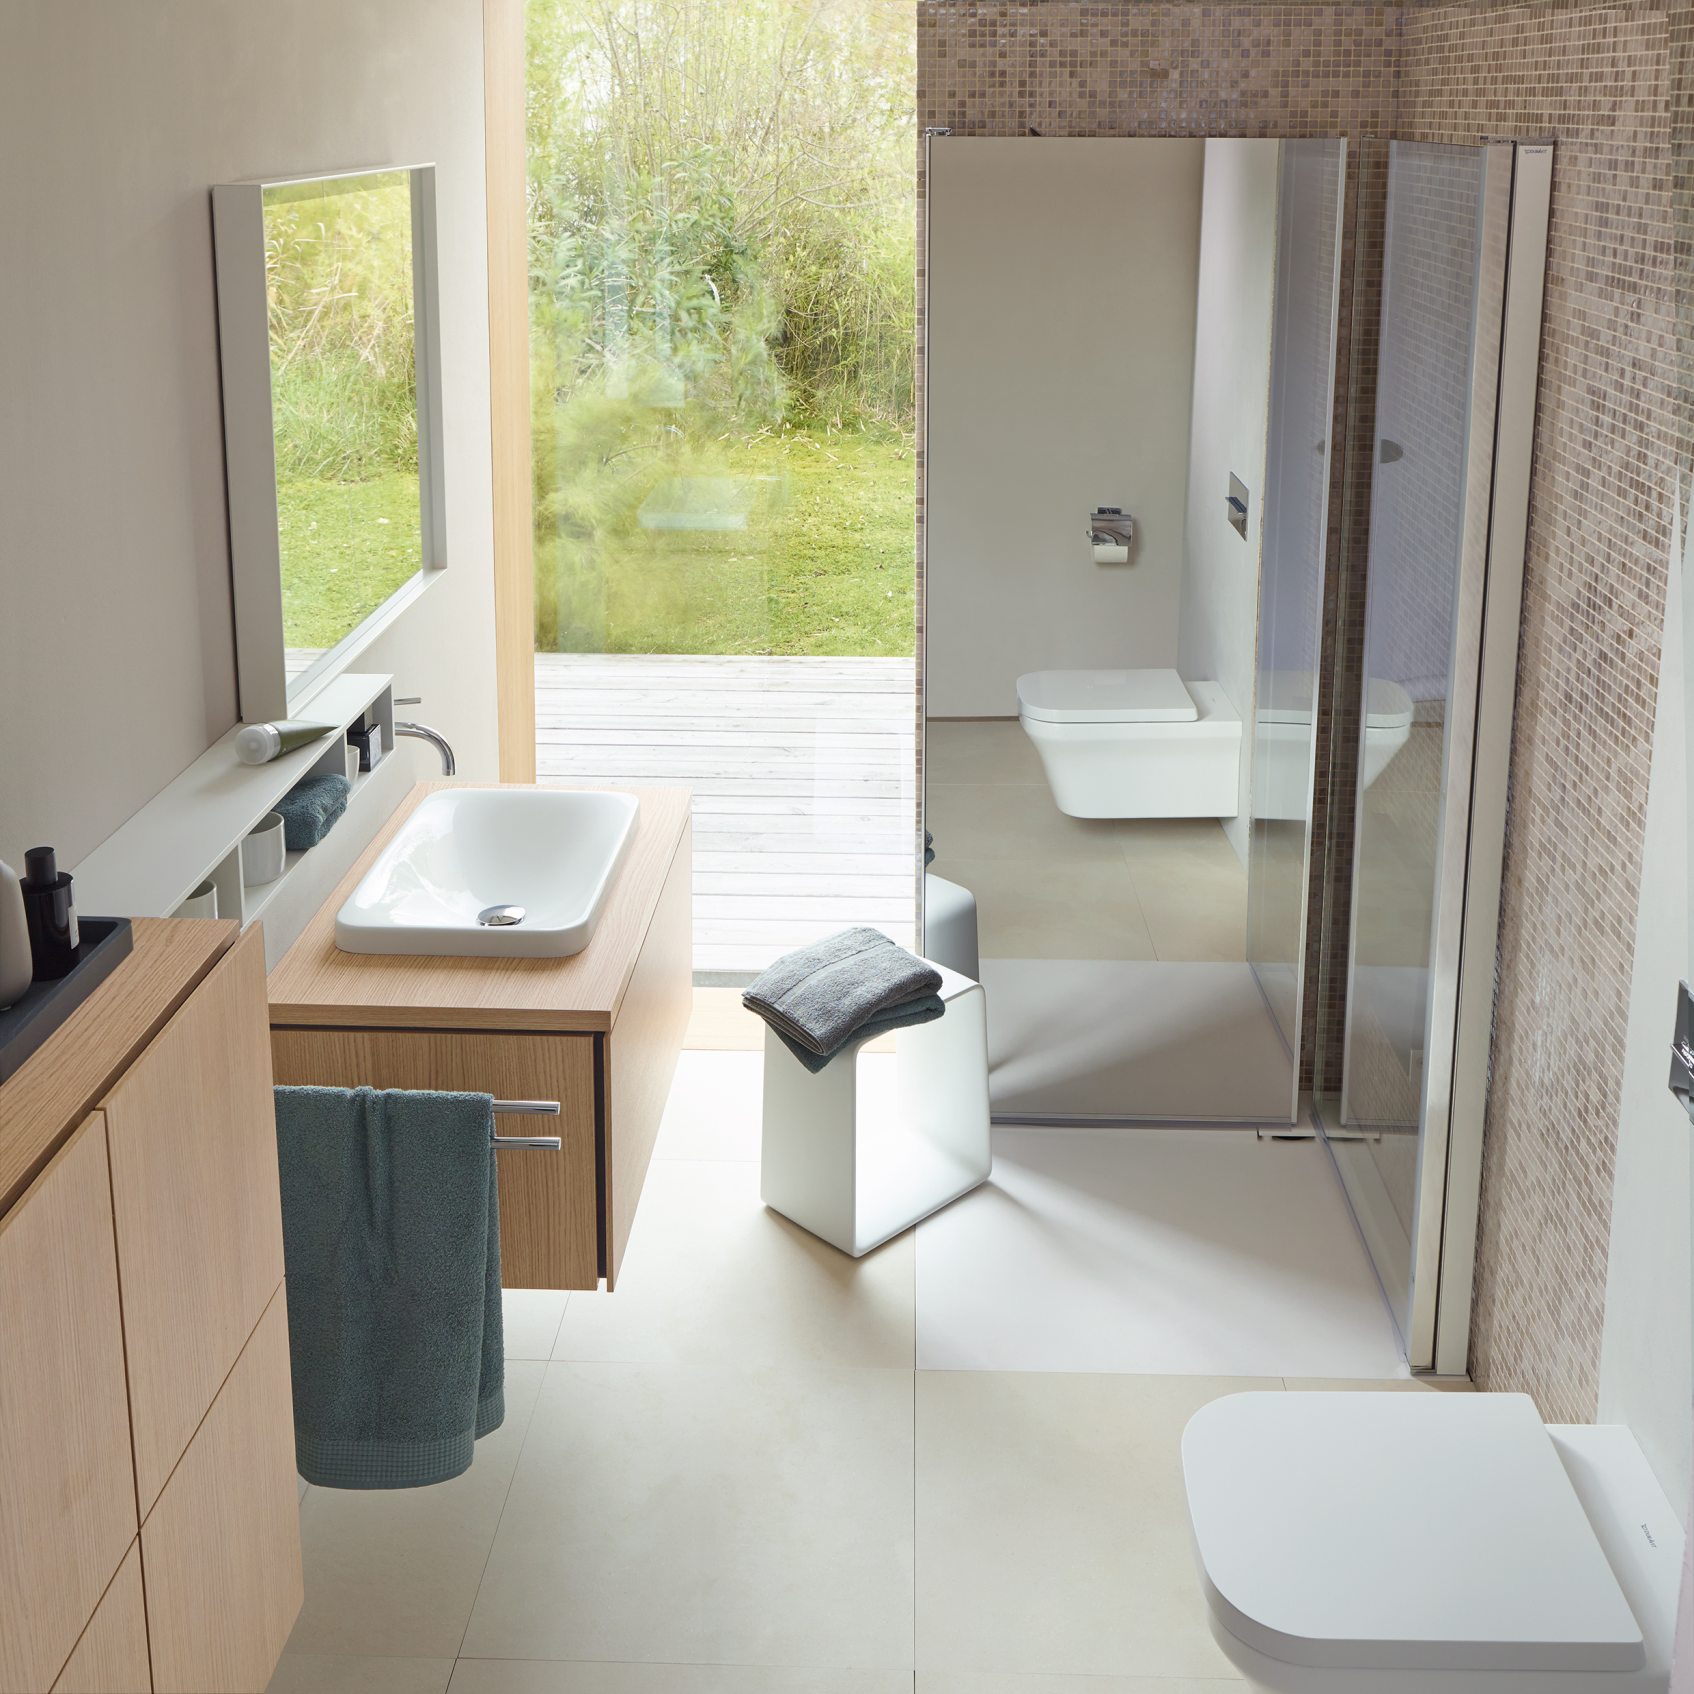 Duravit OpenSpace – mała łazienka – kabina prysznicowa kwadratowa/ kabina prysznicowa prostokątna/kabina składana – łazienka z prysznicem – lazienkarium.pl – opinie, aranżacje, inspiracje, sklep